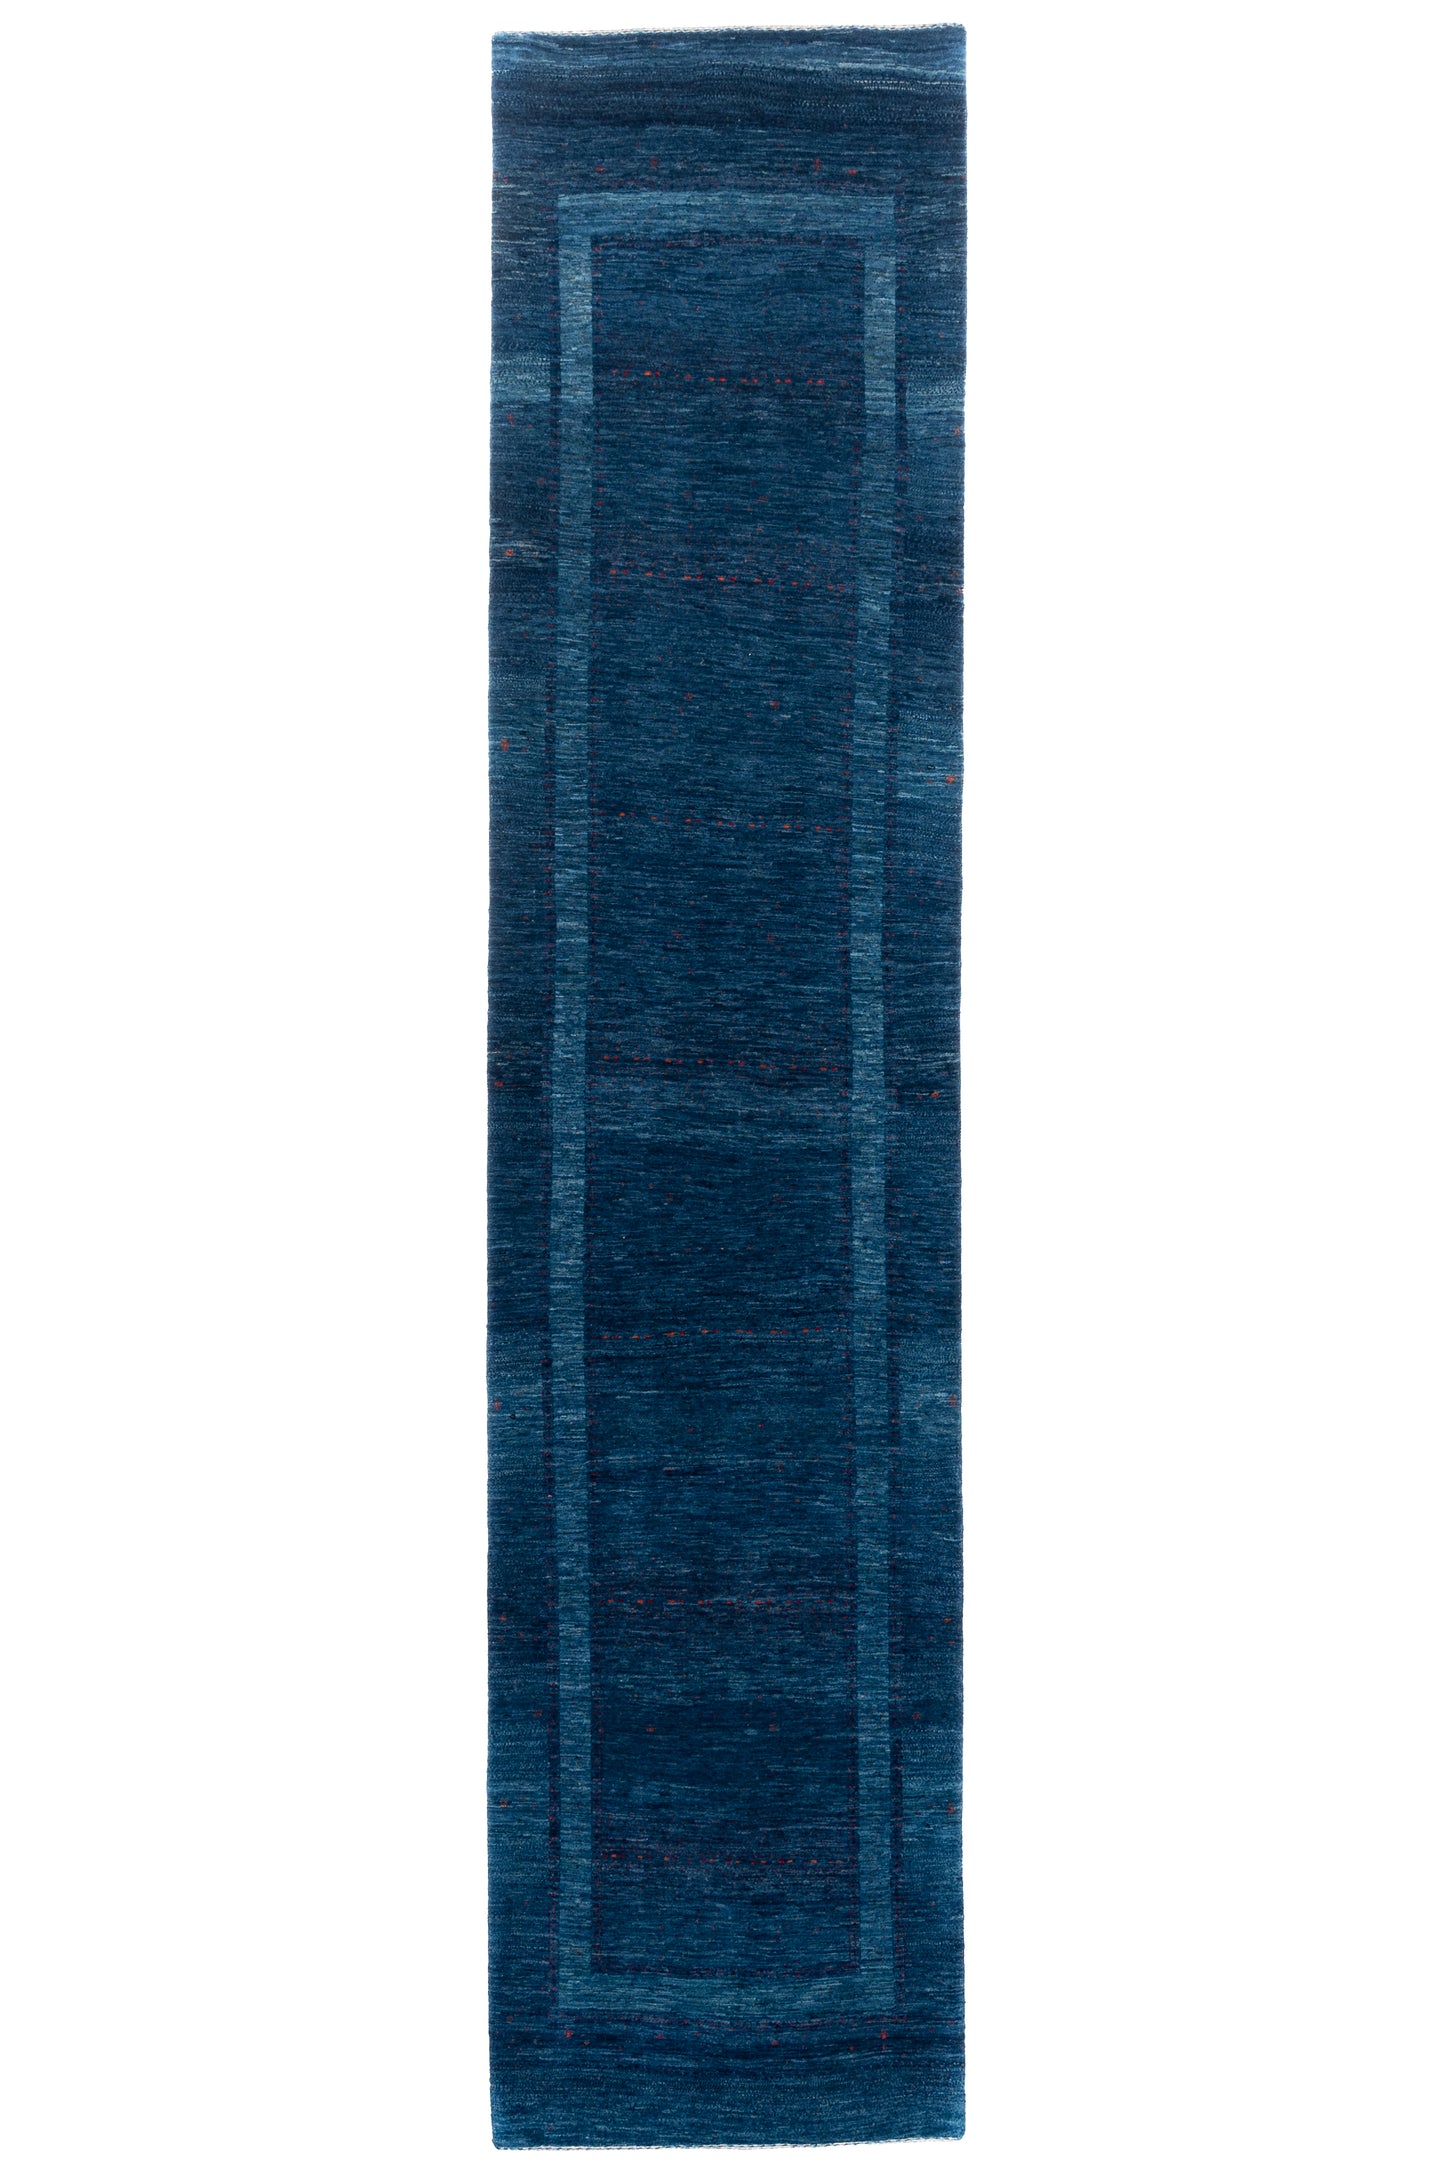 Loribaft Atash, 412 × 93 cm